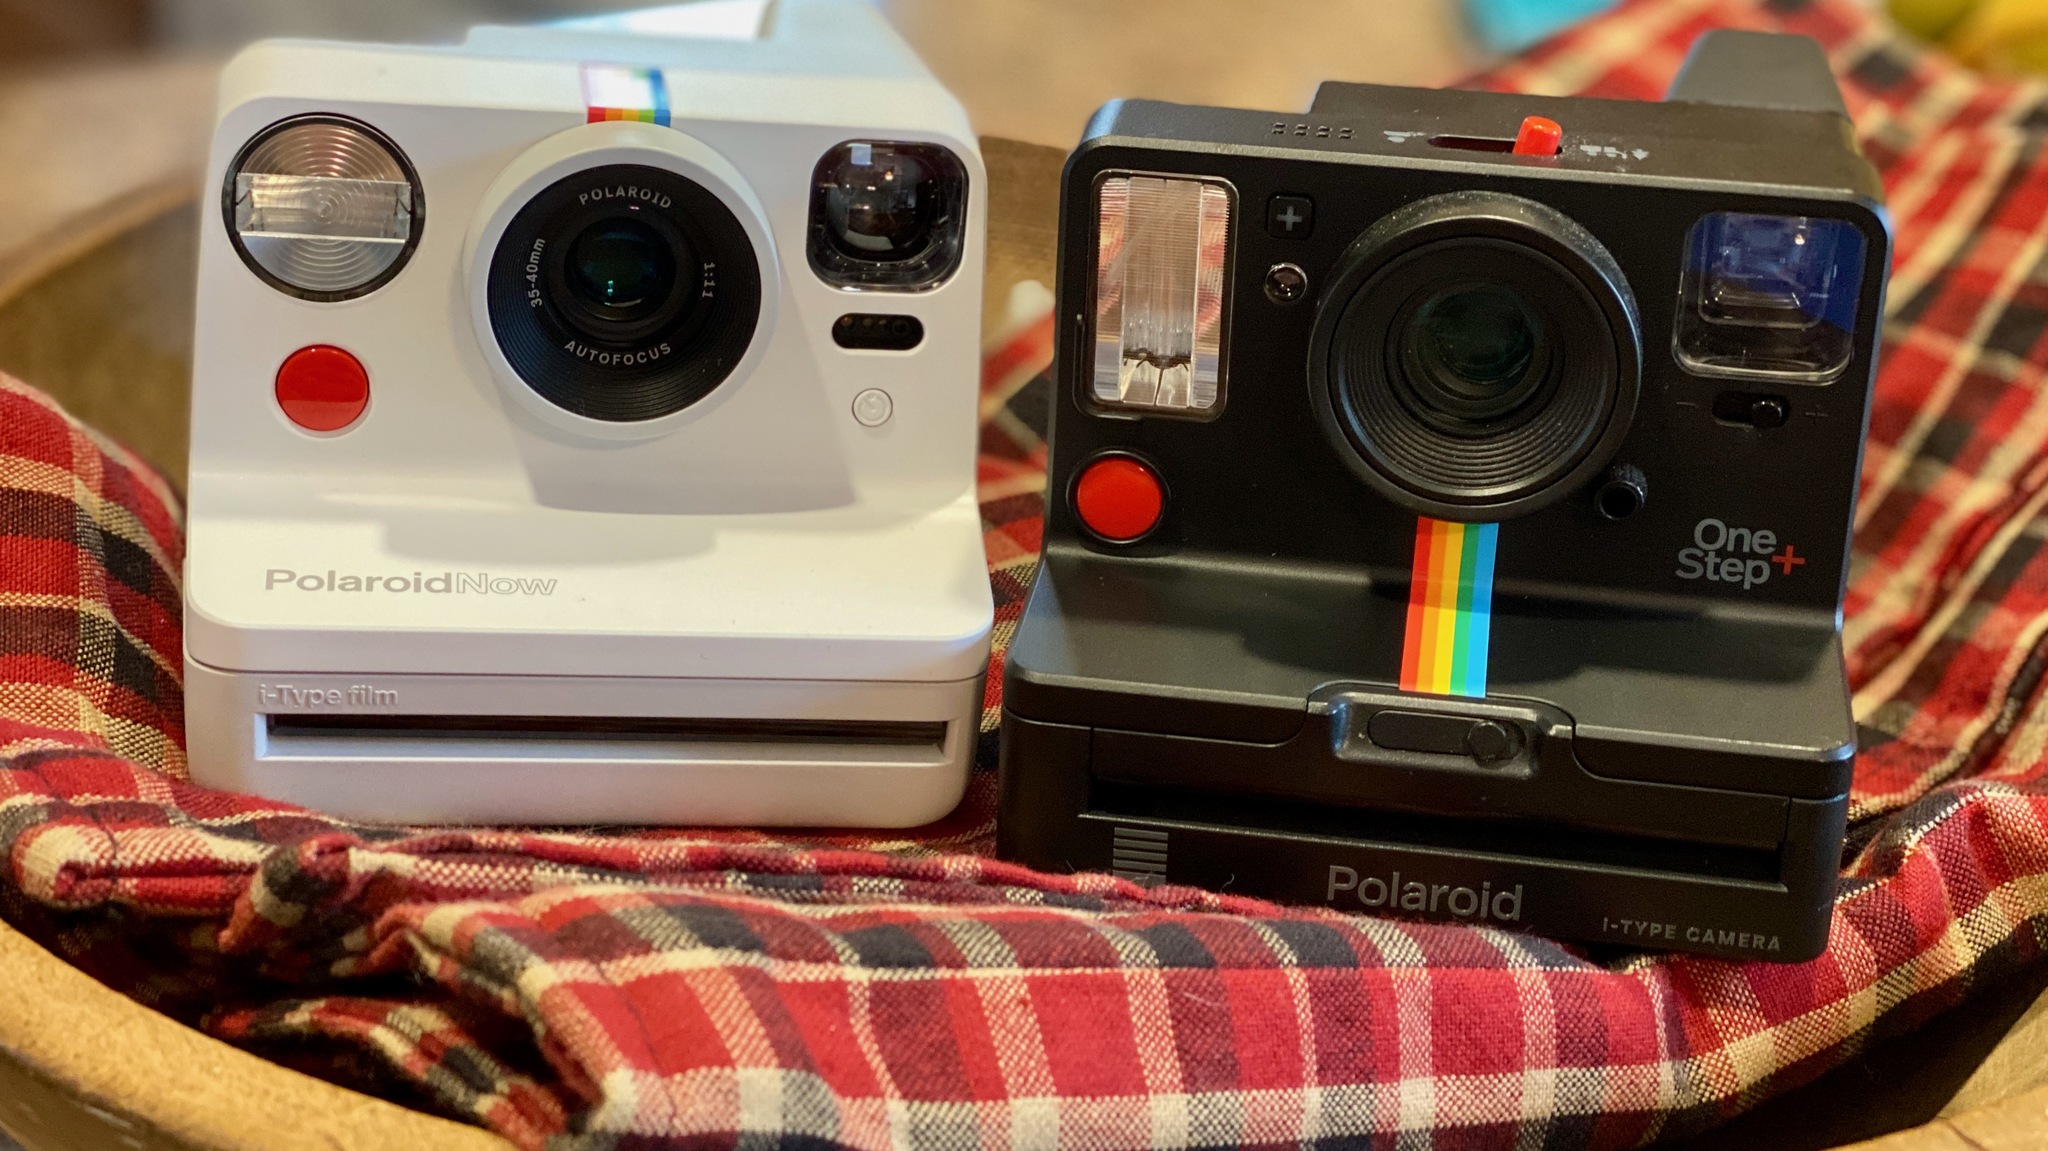 Polaroid Now and Polaroid OneStep+